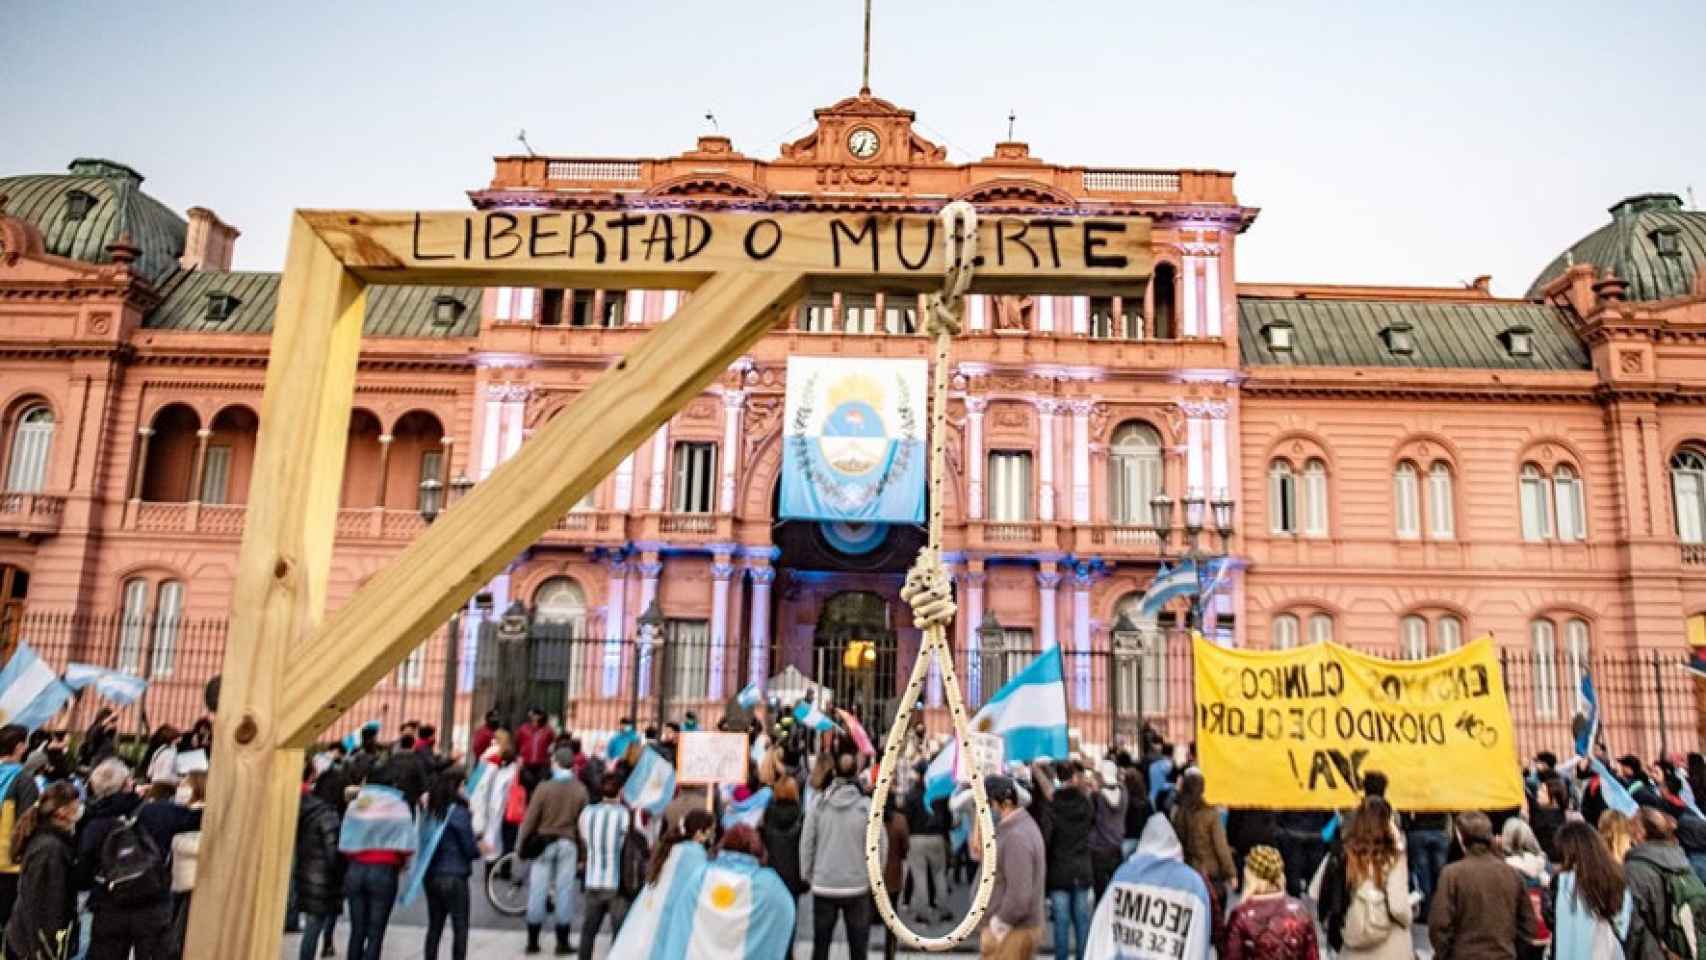 Imagen de las protestas frente a la Casa Rosada en Argentina